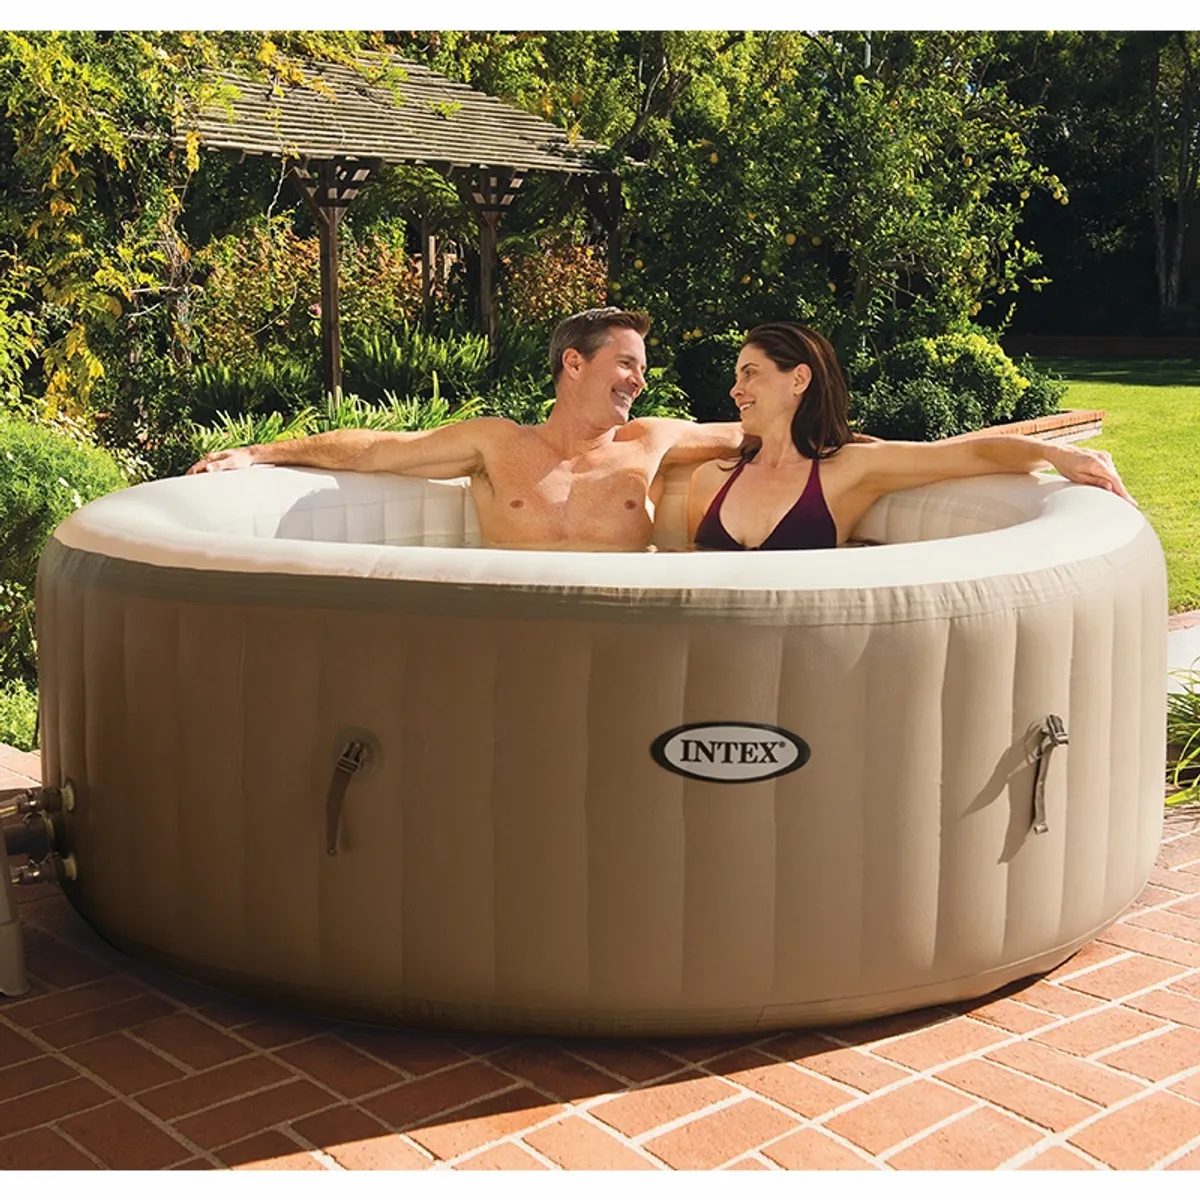 Intex Pure Spa Bubble Therapy inflatable spa - 4 person